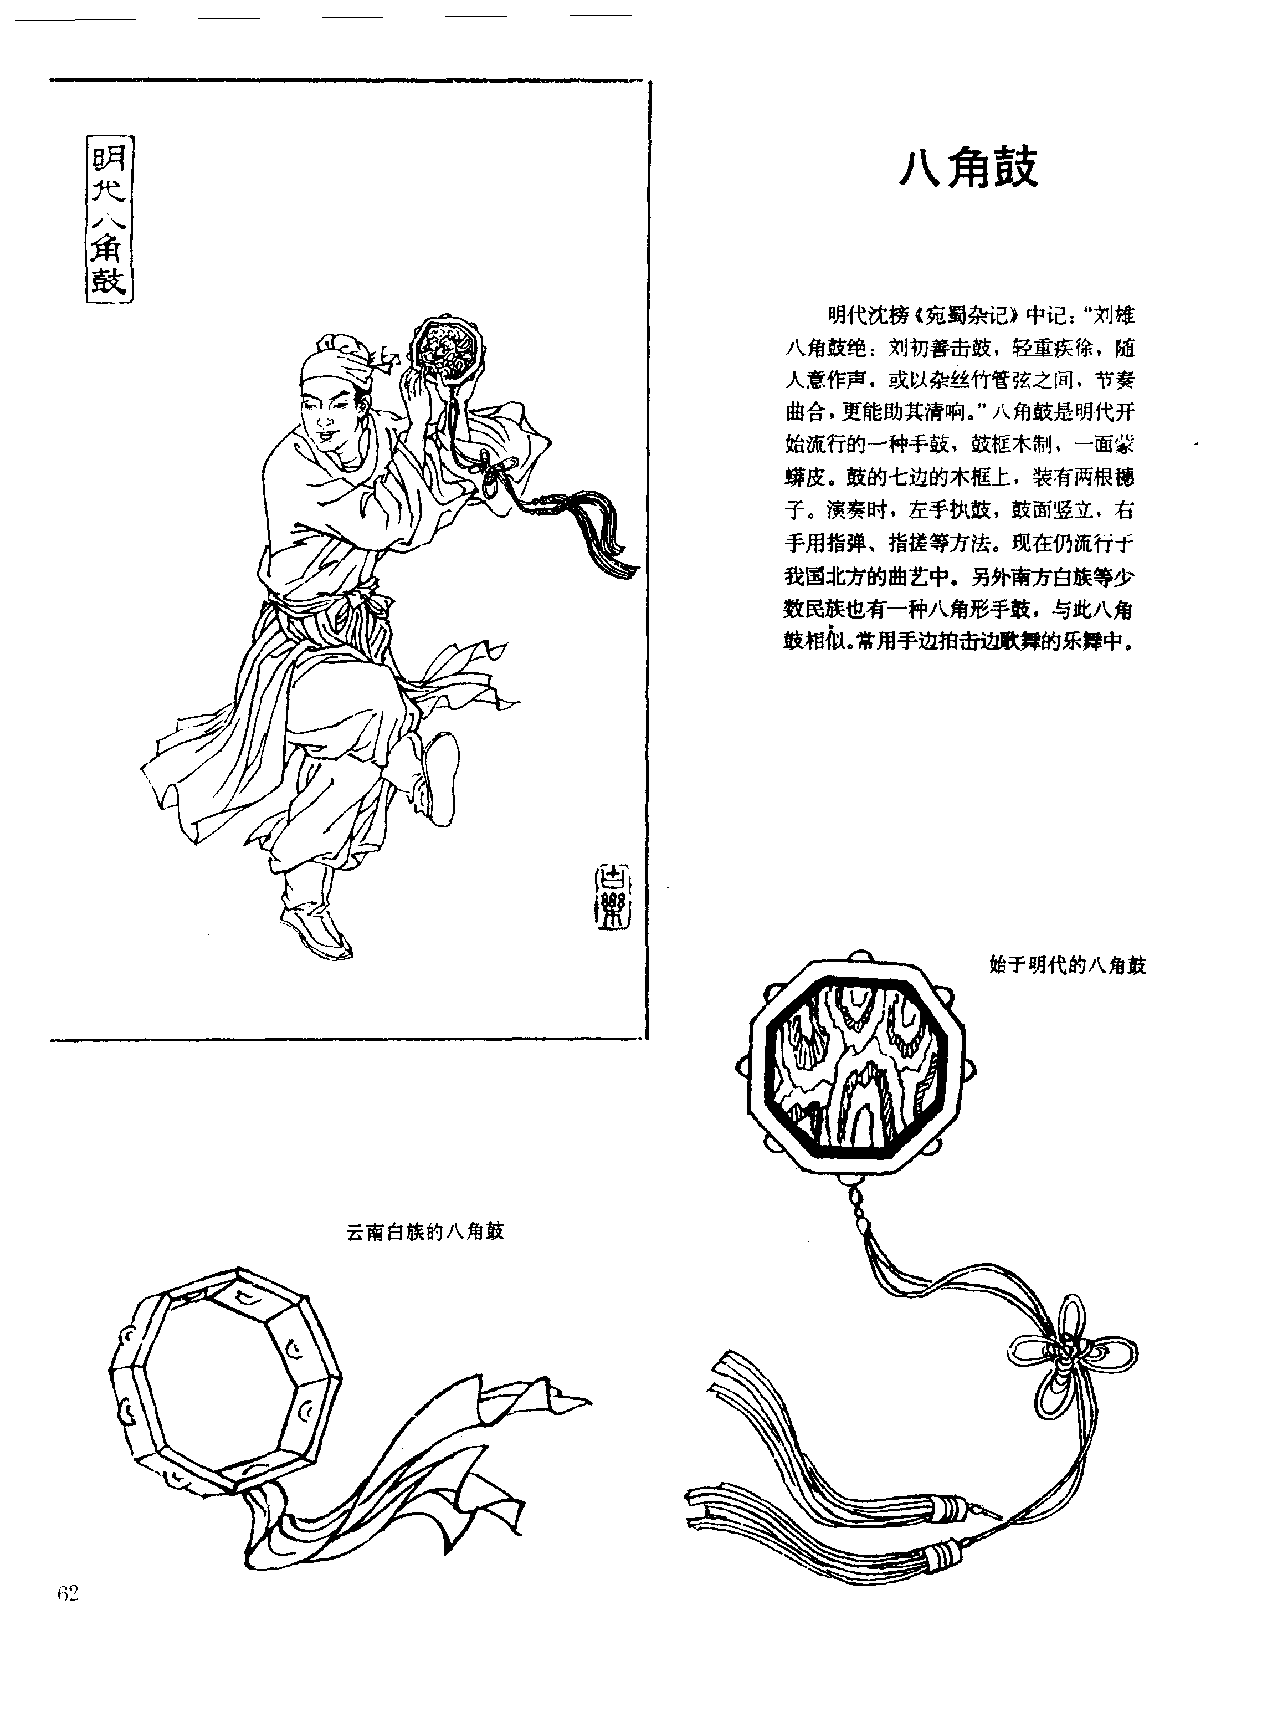 中国古代乐器《八角鼓》